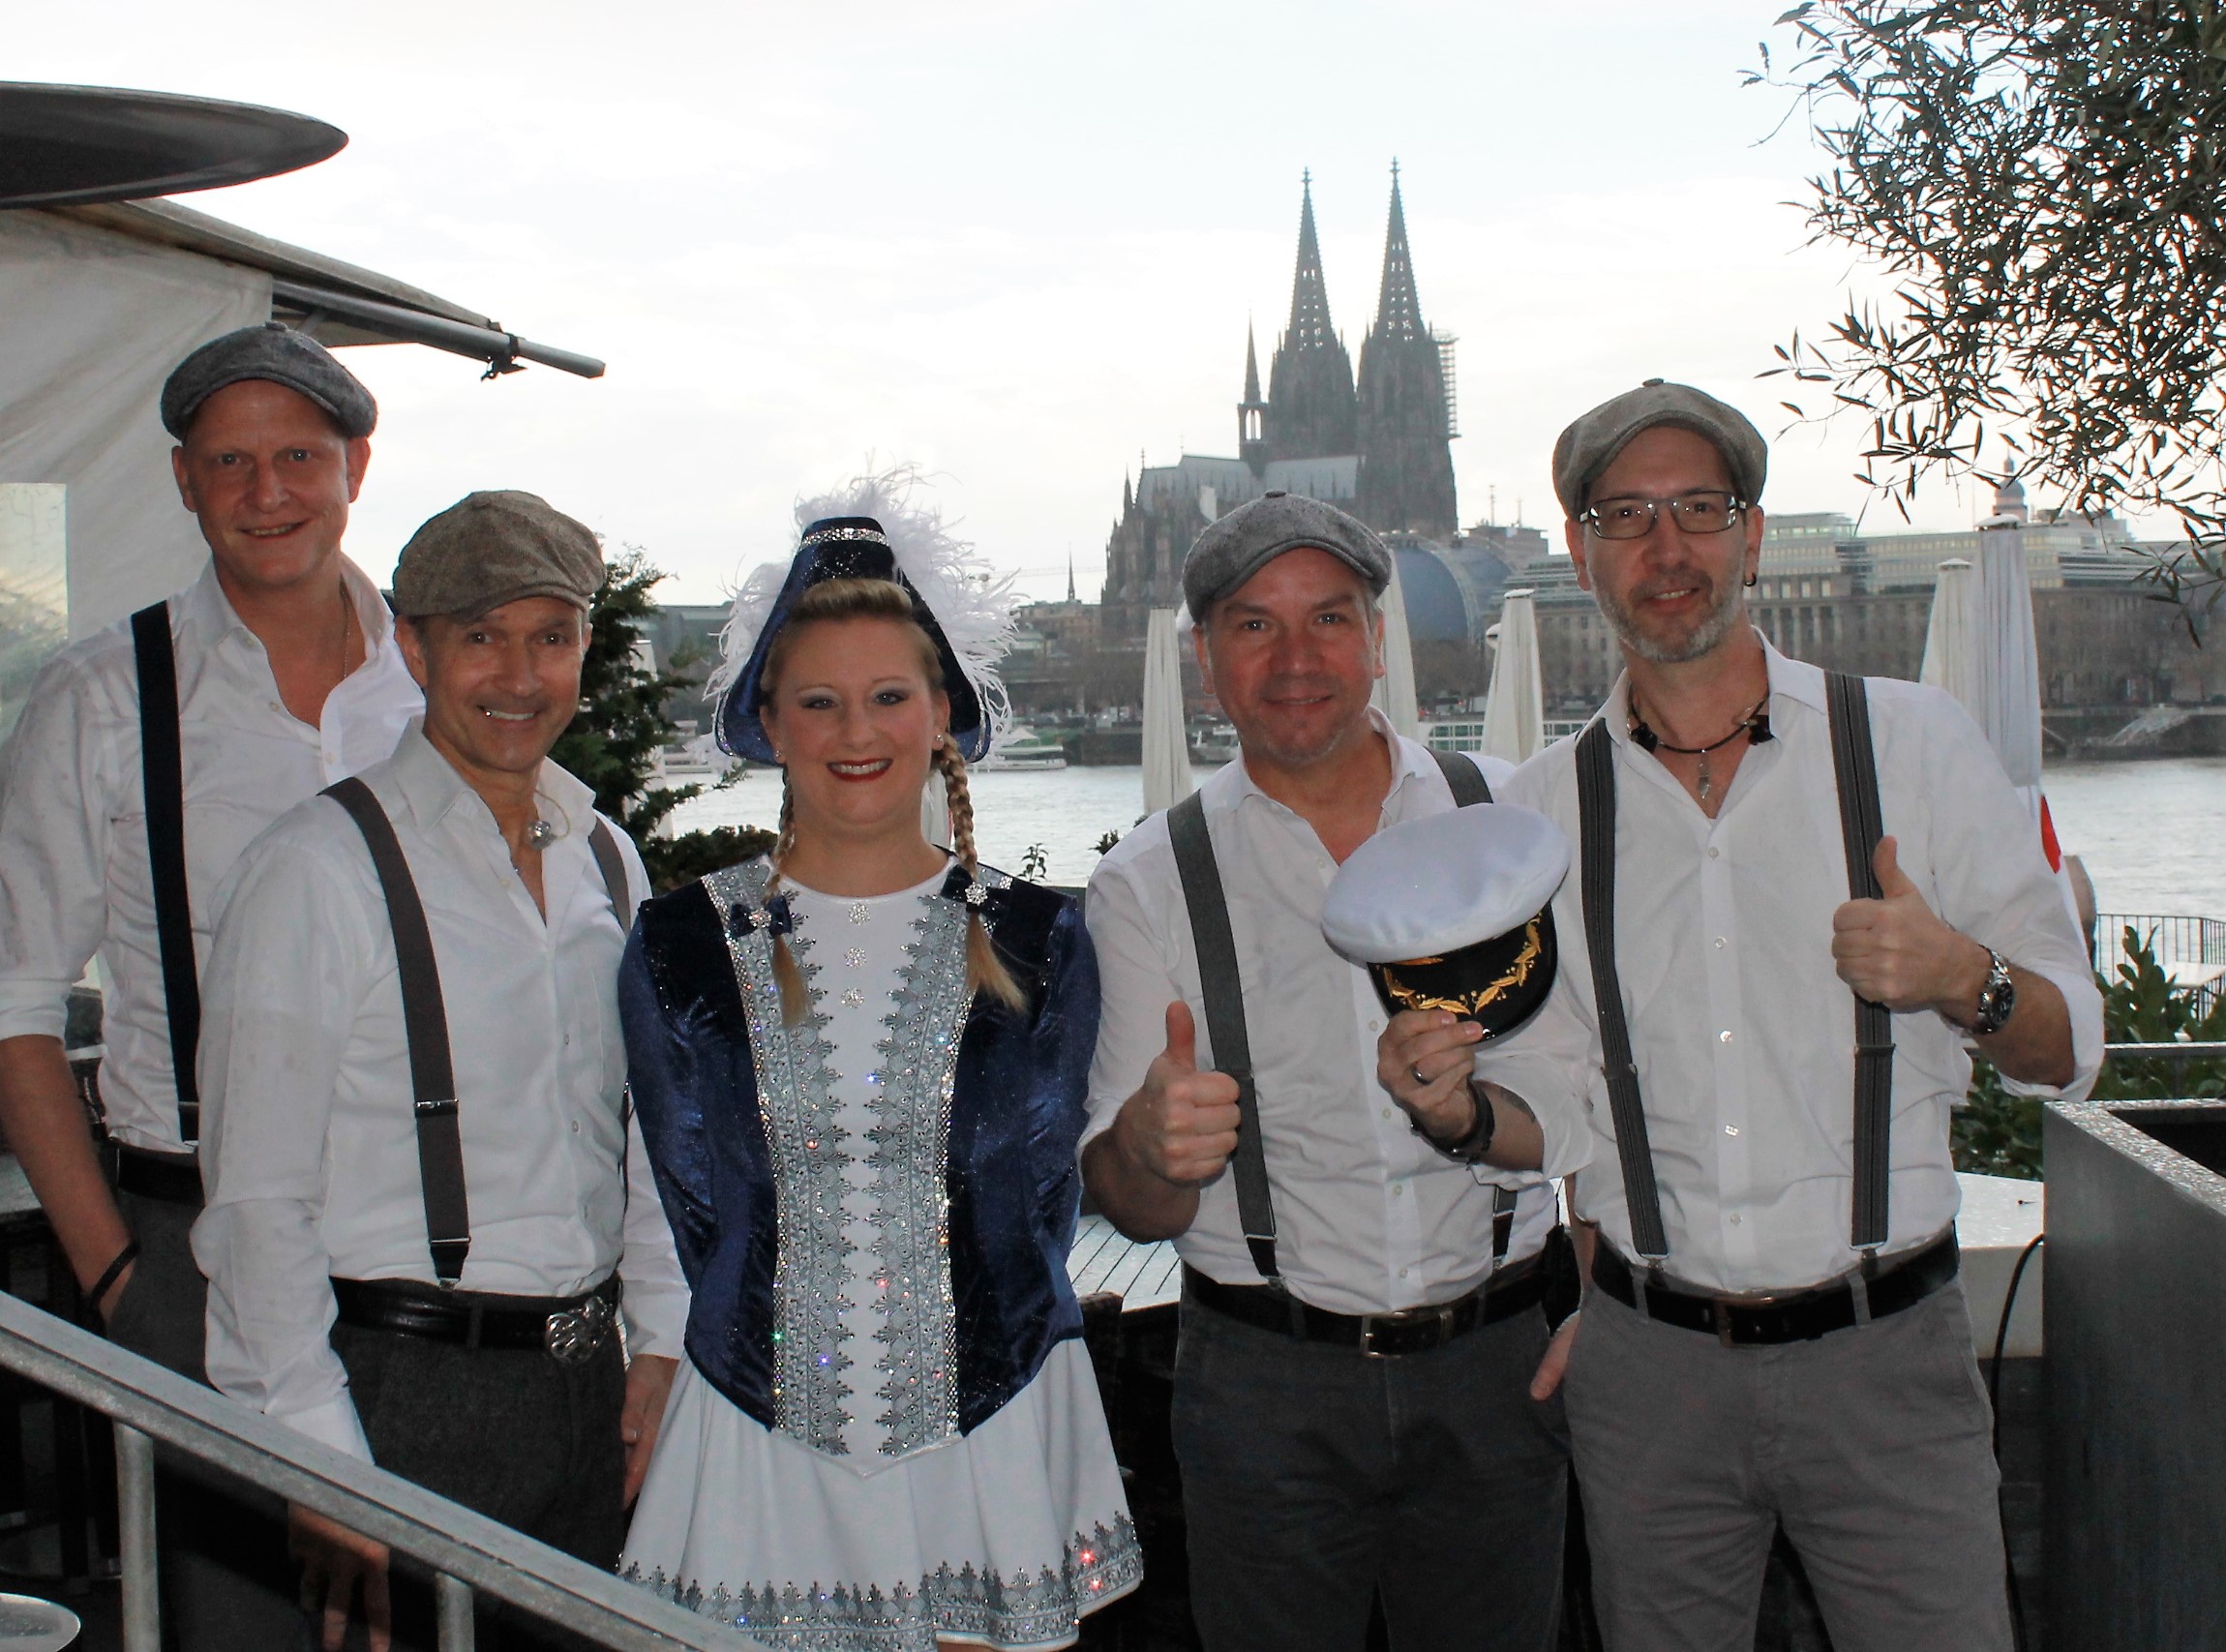 Singen die Jeckliner Hymne für TUI Cruises: Die Kölner Band Klüngelköpp